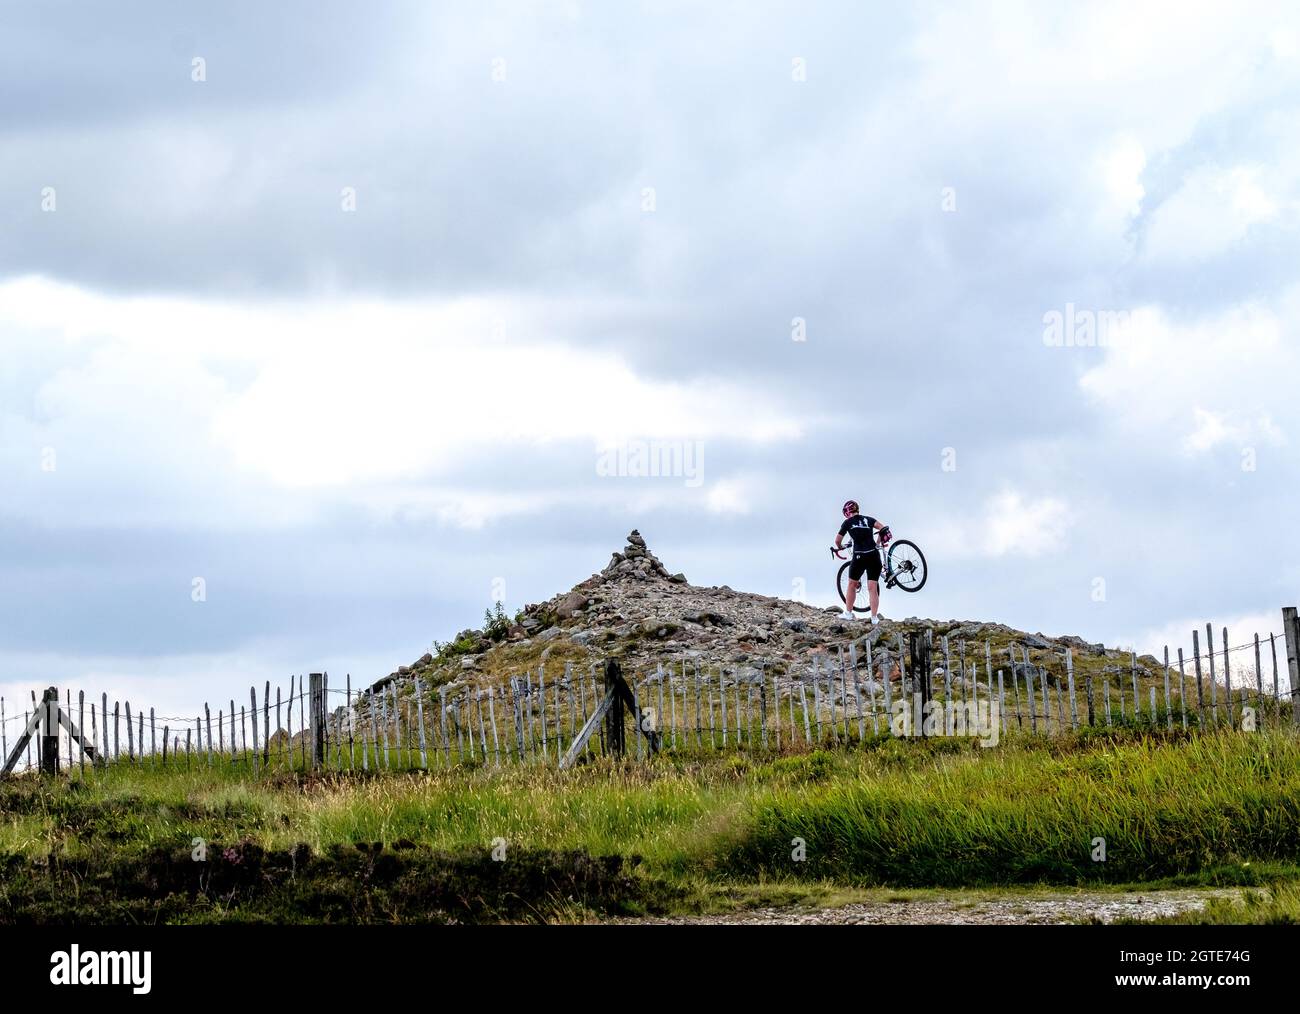 A Cairn O' mounth, dans les Cairngorms de l'est à Aberdeenshire, en Écosse, un cycliste porte son vélo de montagne jusqu'au sommet du cairn. Banque D'Images